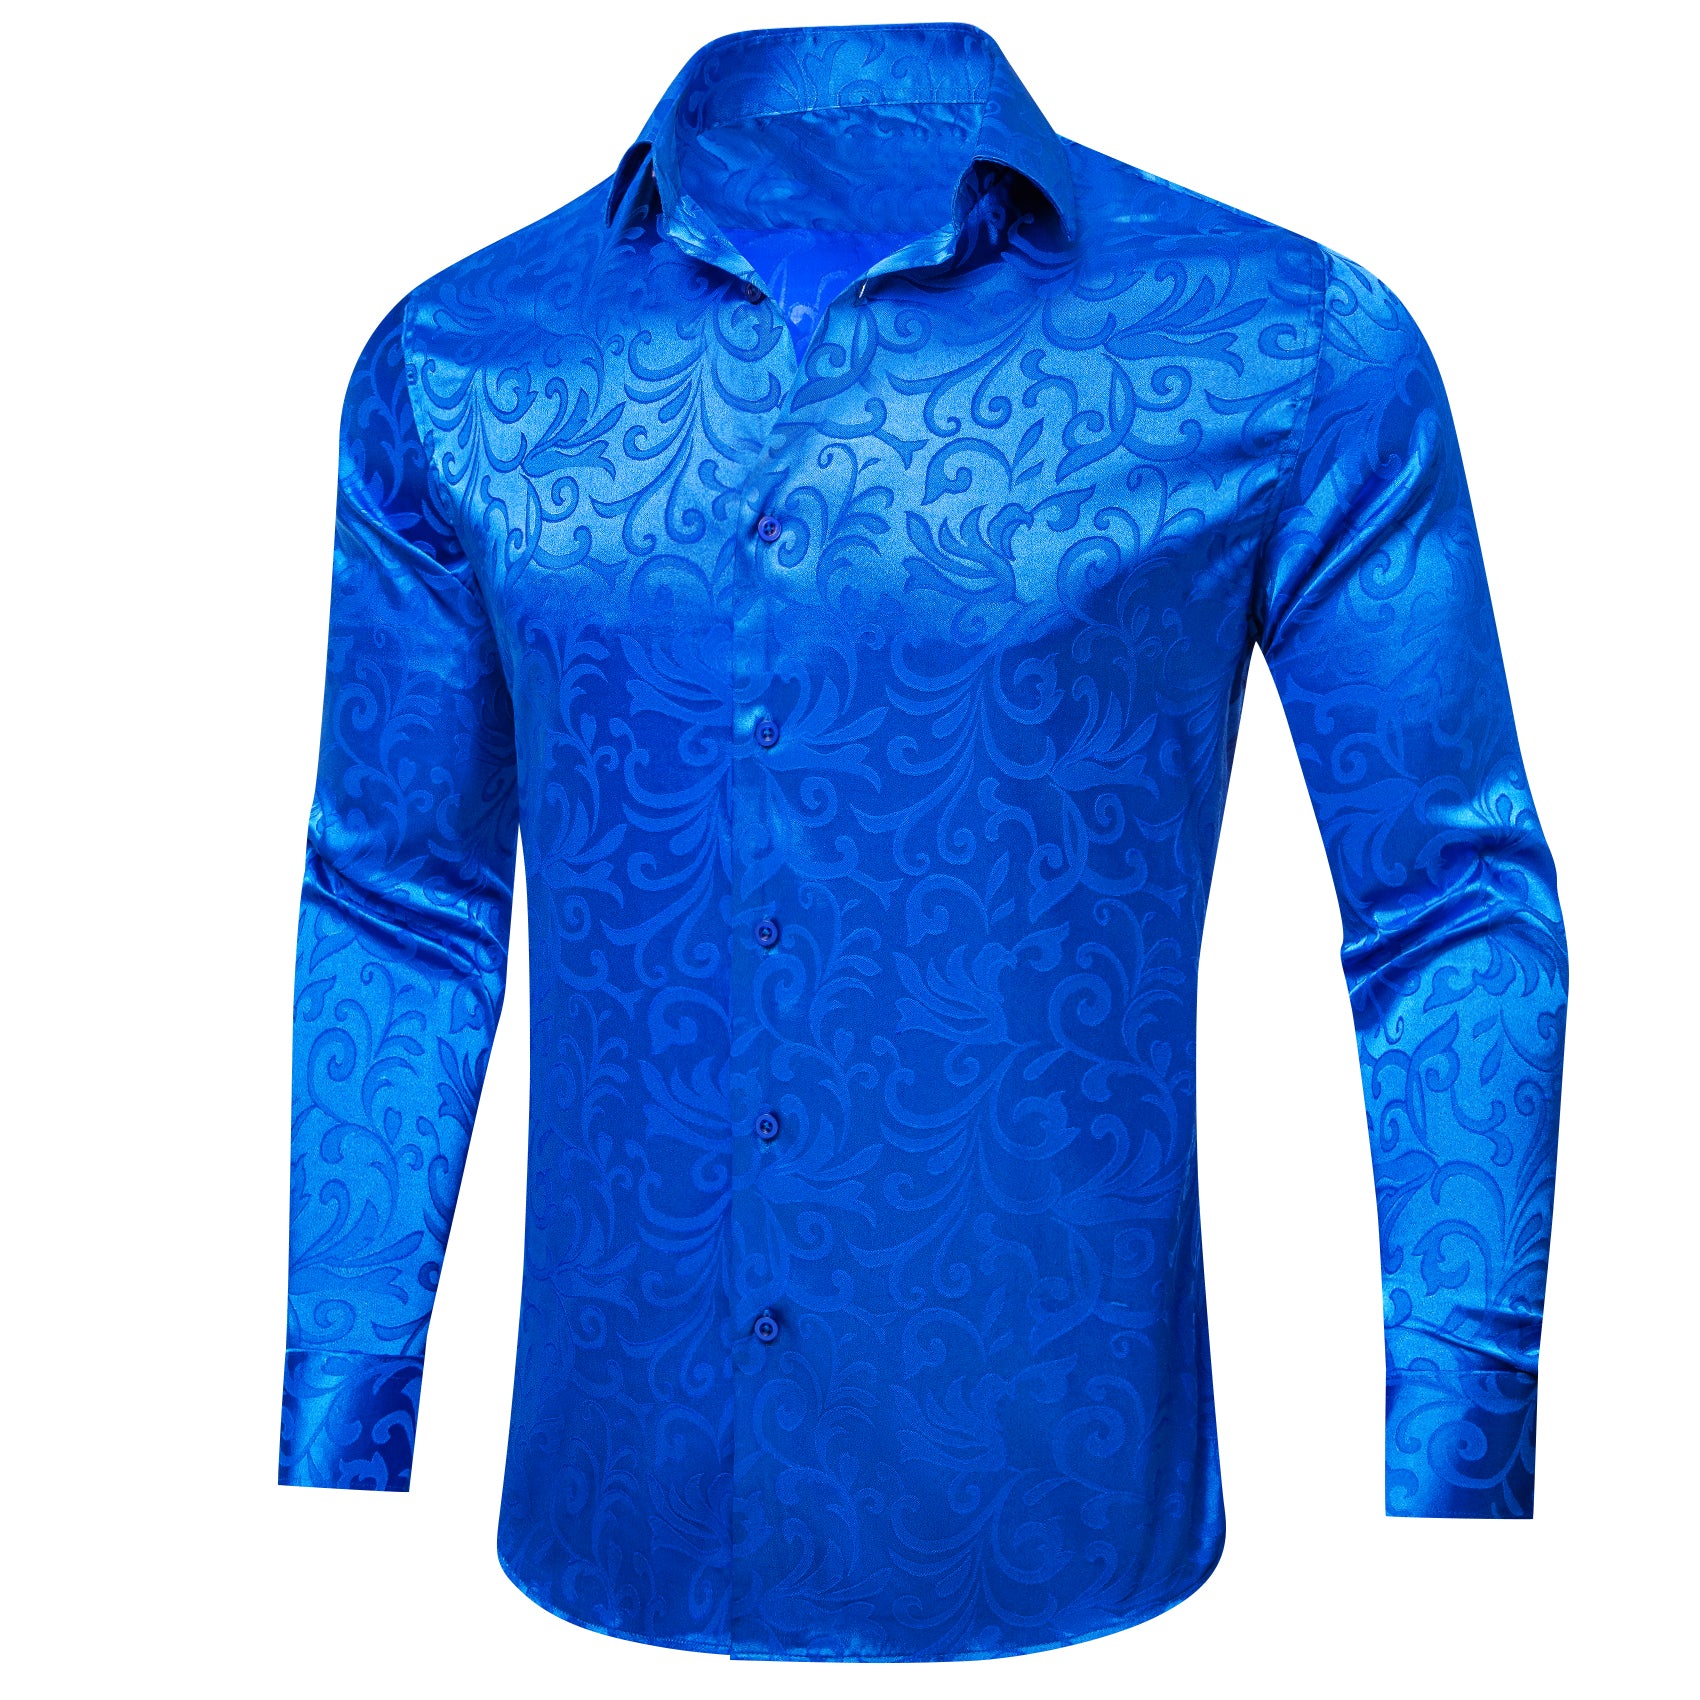 Barry.wang Cerulean Blue Floral Silk Men's Shirt